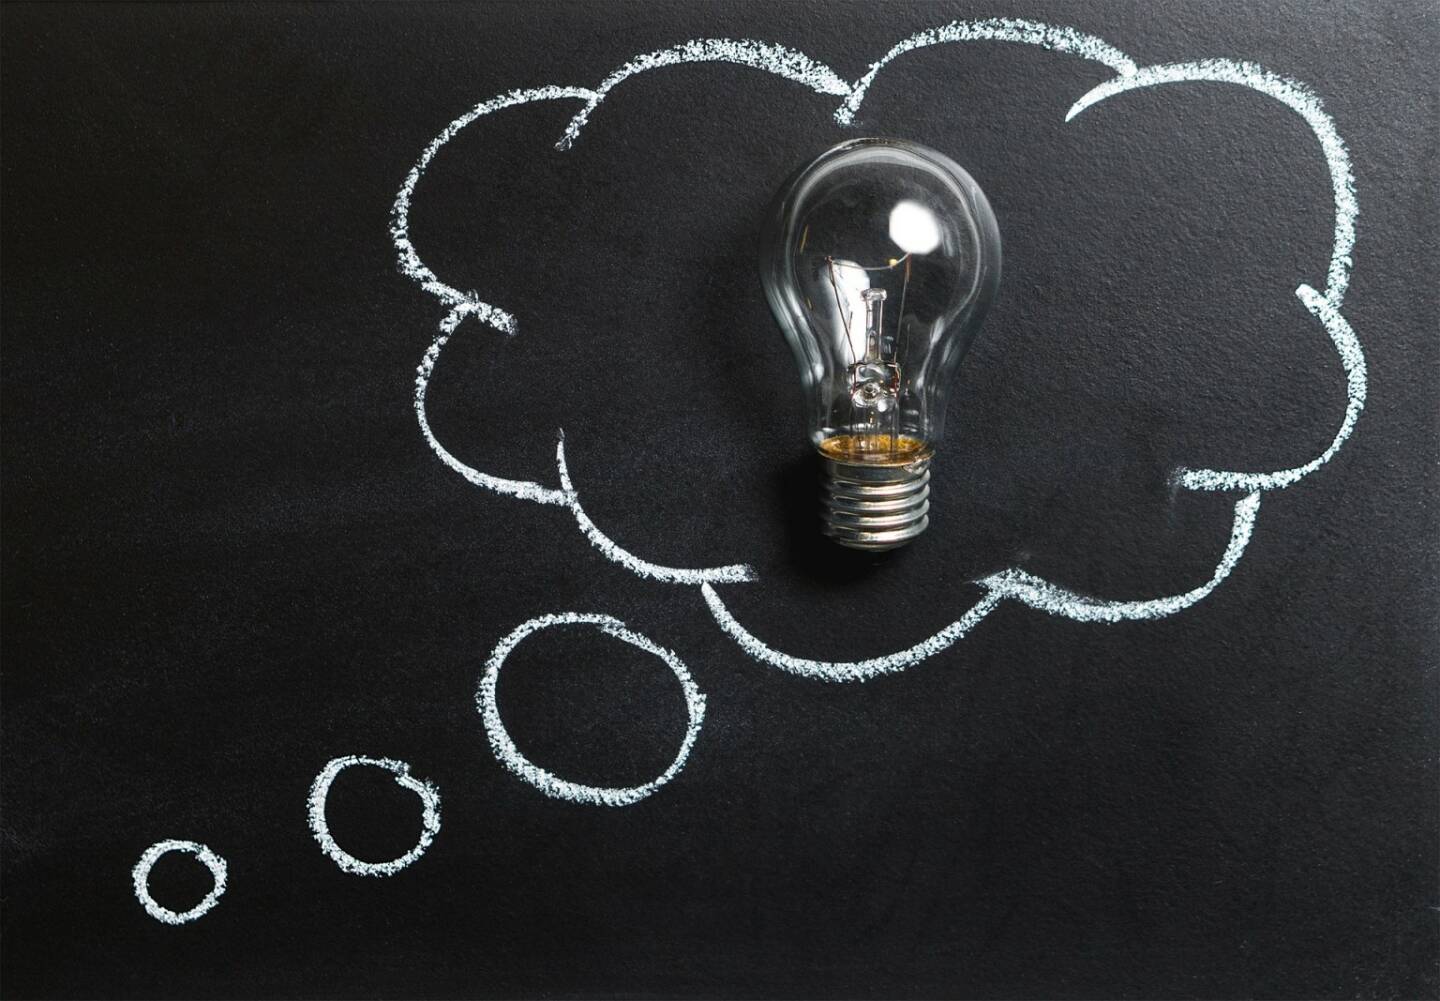 Gedanken, nachdenken, Idee, Kreativ, Innovation, Phantasie (Bild: Pixabay/TeroVesalainen https://pixabay.com/de/gedanken-idee-innovation-phantasie-2123970/ )